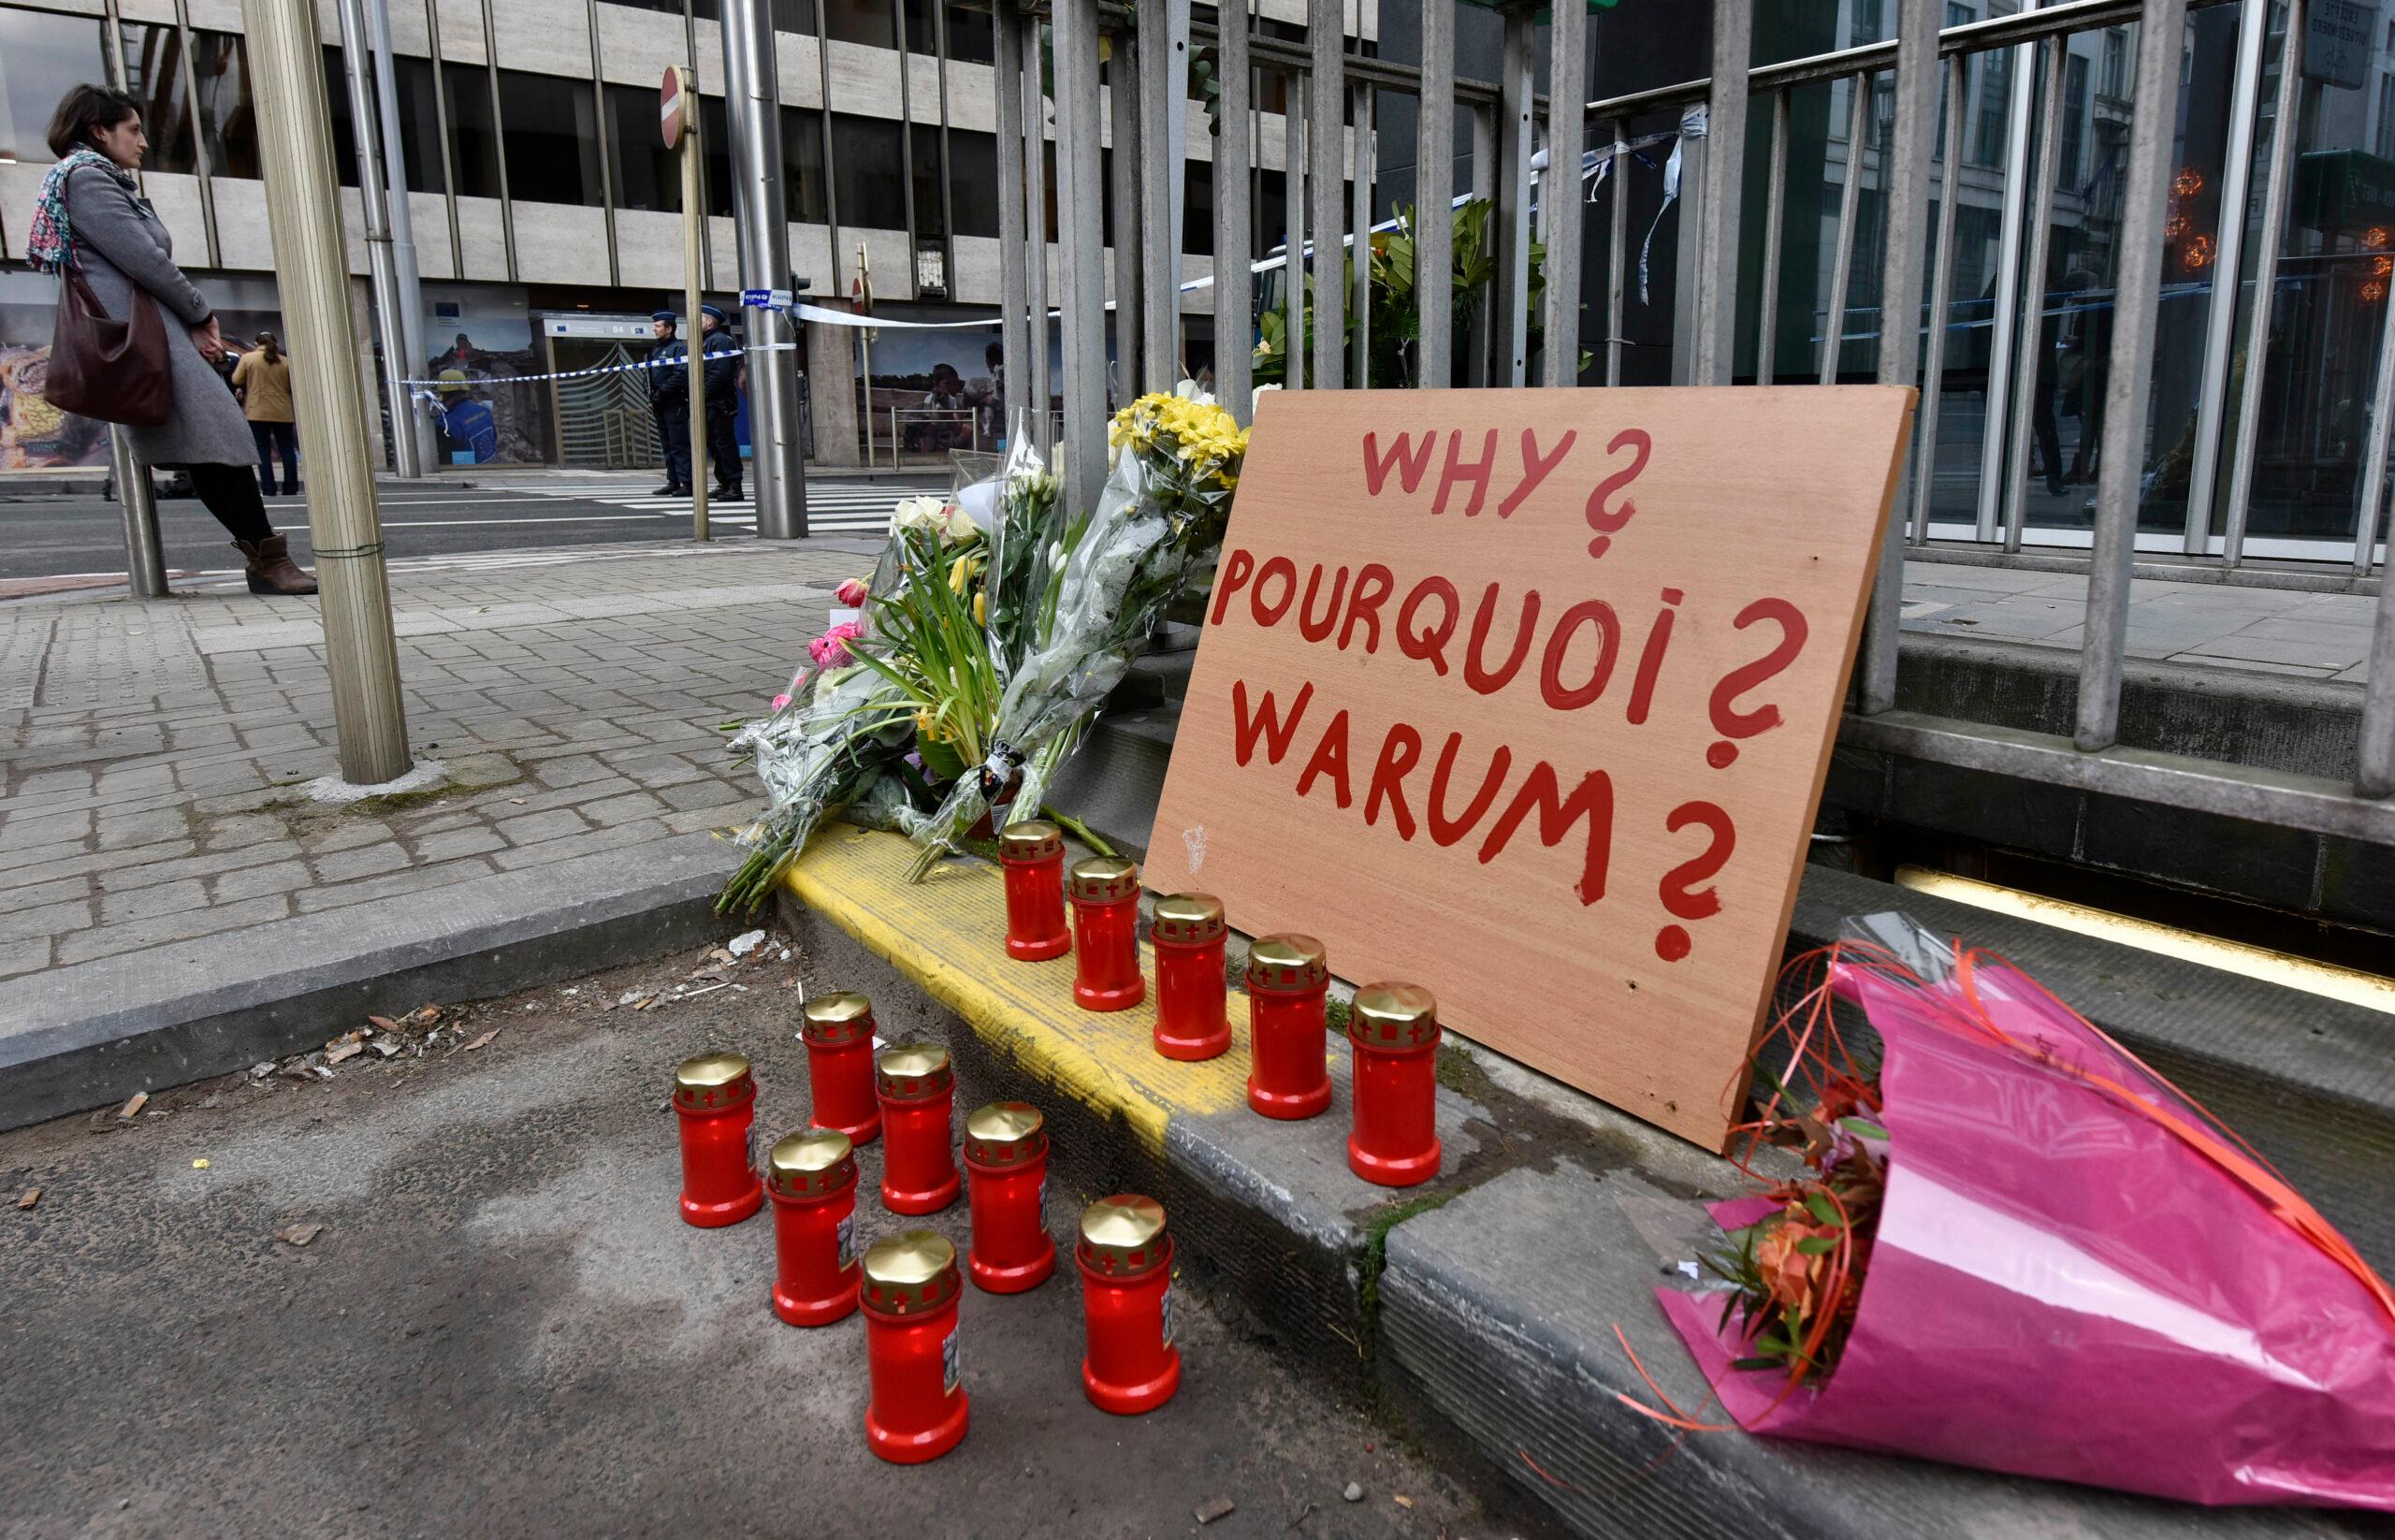 Aeropuerto cerrado, actividades canceladas, un nuevo sospechoso: así vive Bélgica tras ataques